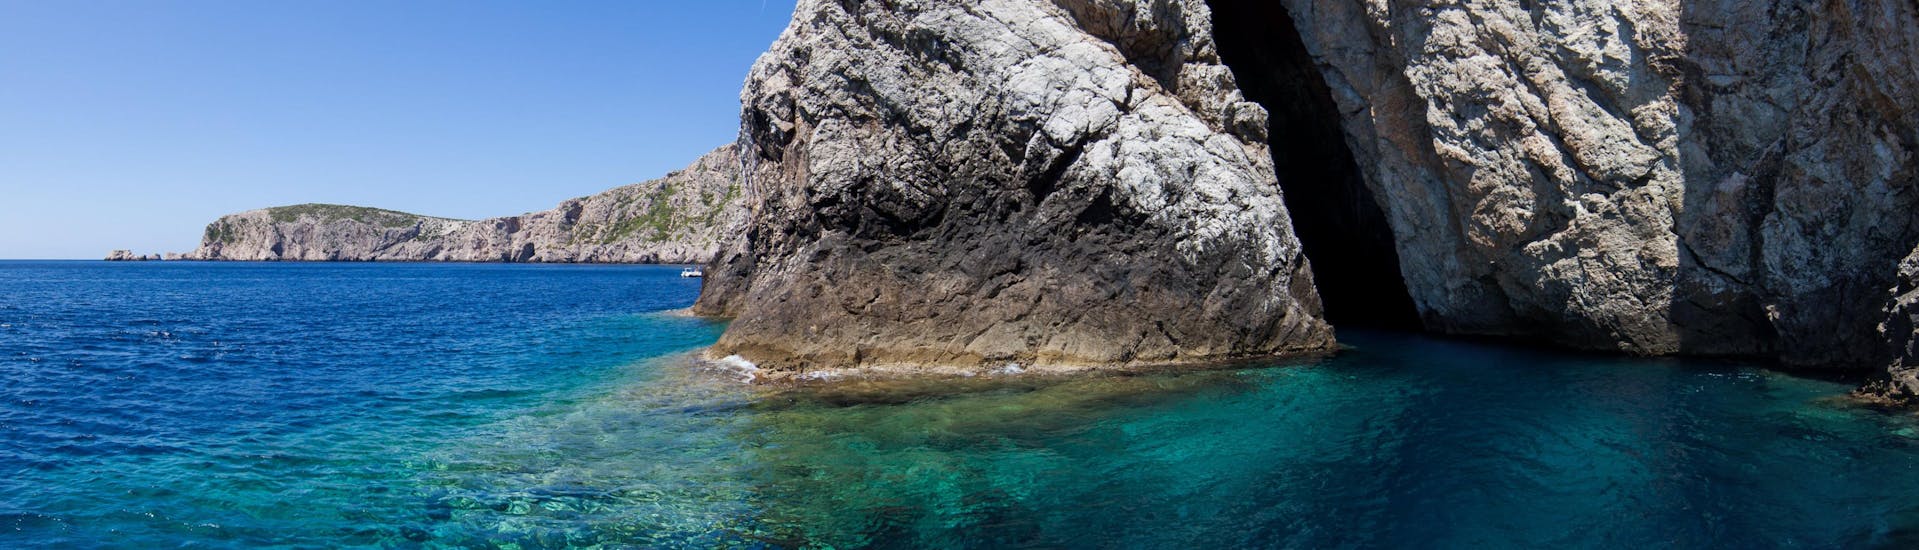 Bootstouren zur Blauen Grotte auf der Insel Biševo sind sehr gefragt.